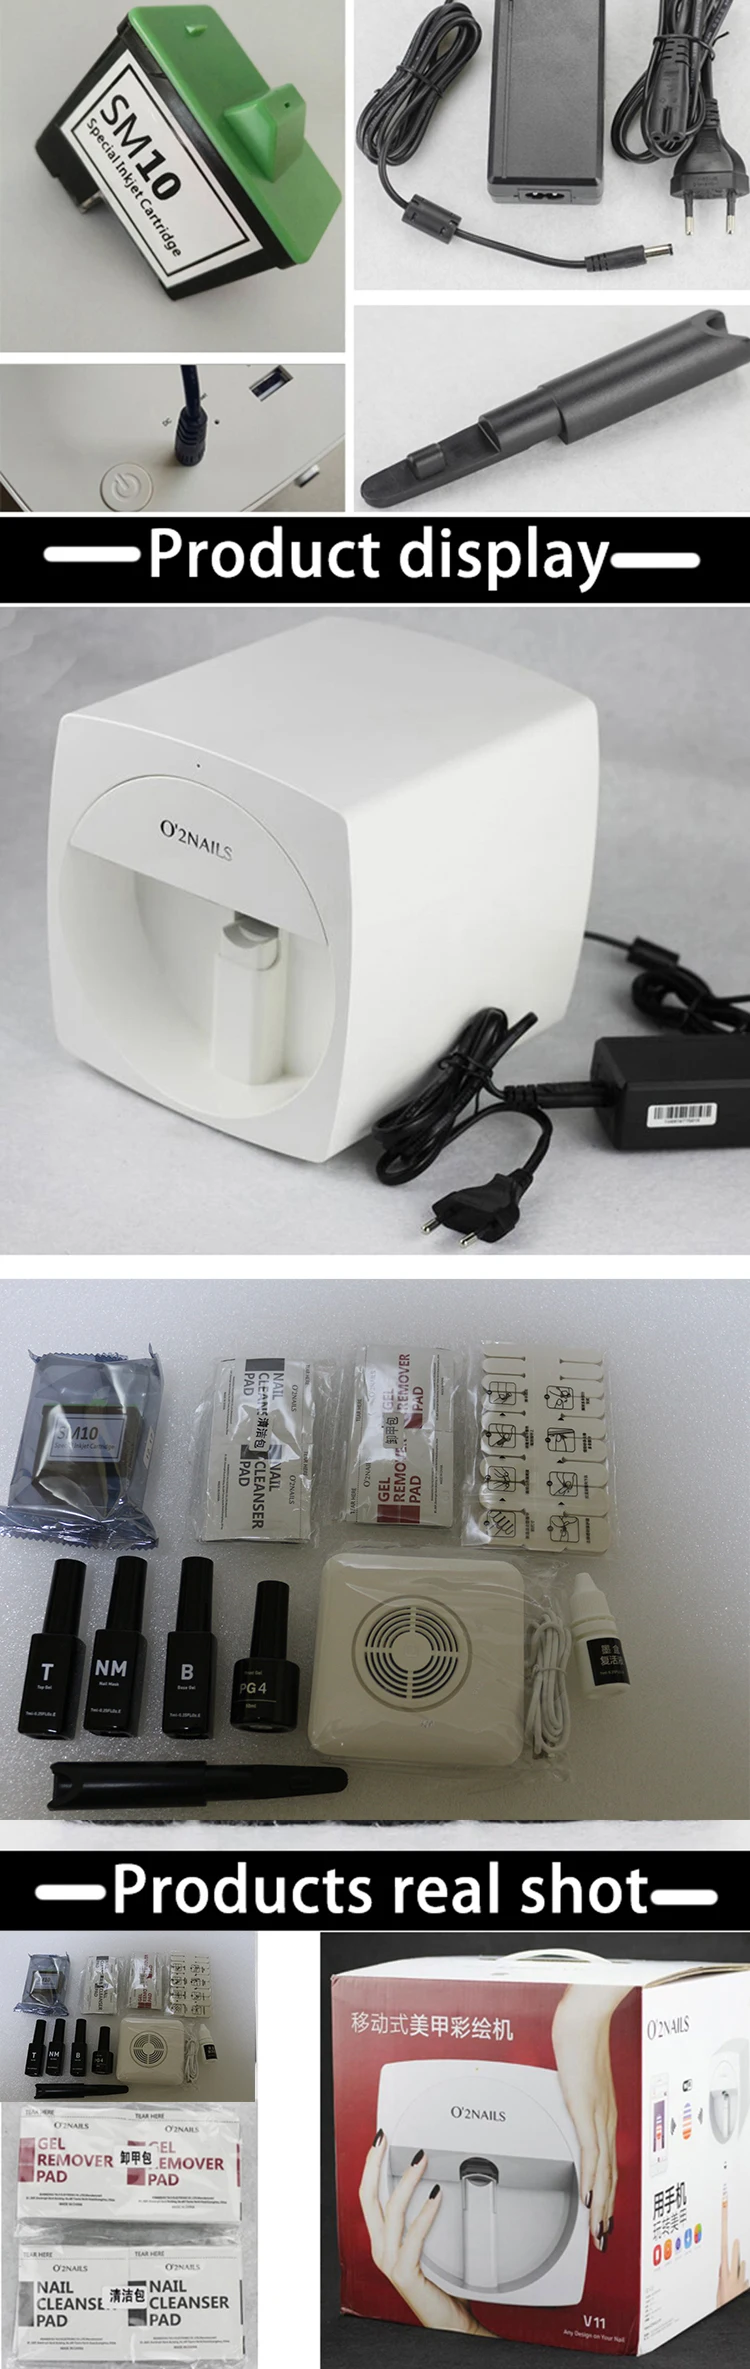 O2 Мобильный аппарат для маникюра, передачи фотографий, цветная печать, оборудование для дизайна ногтей, принтер для ногтей, машина для маникюра